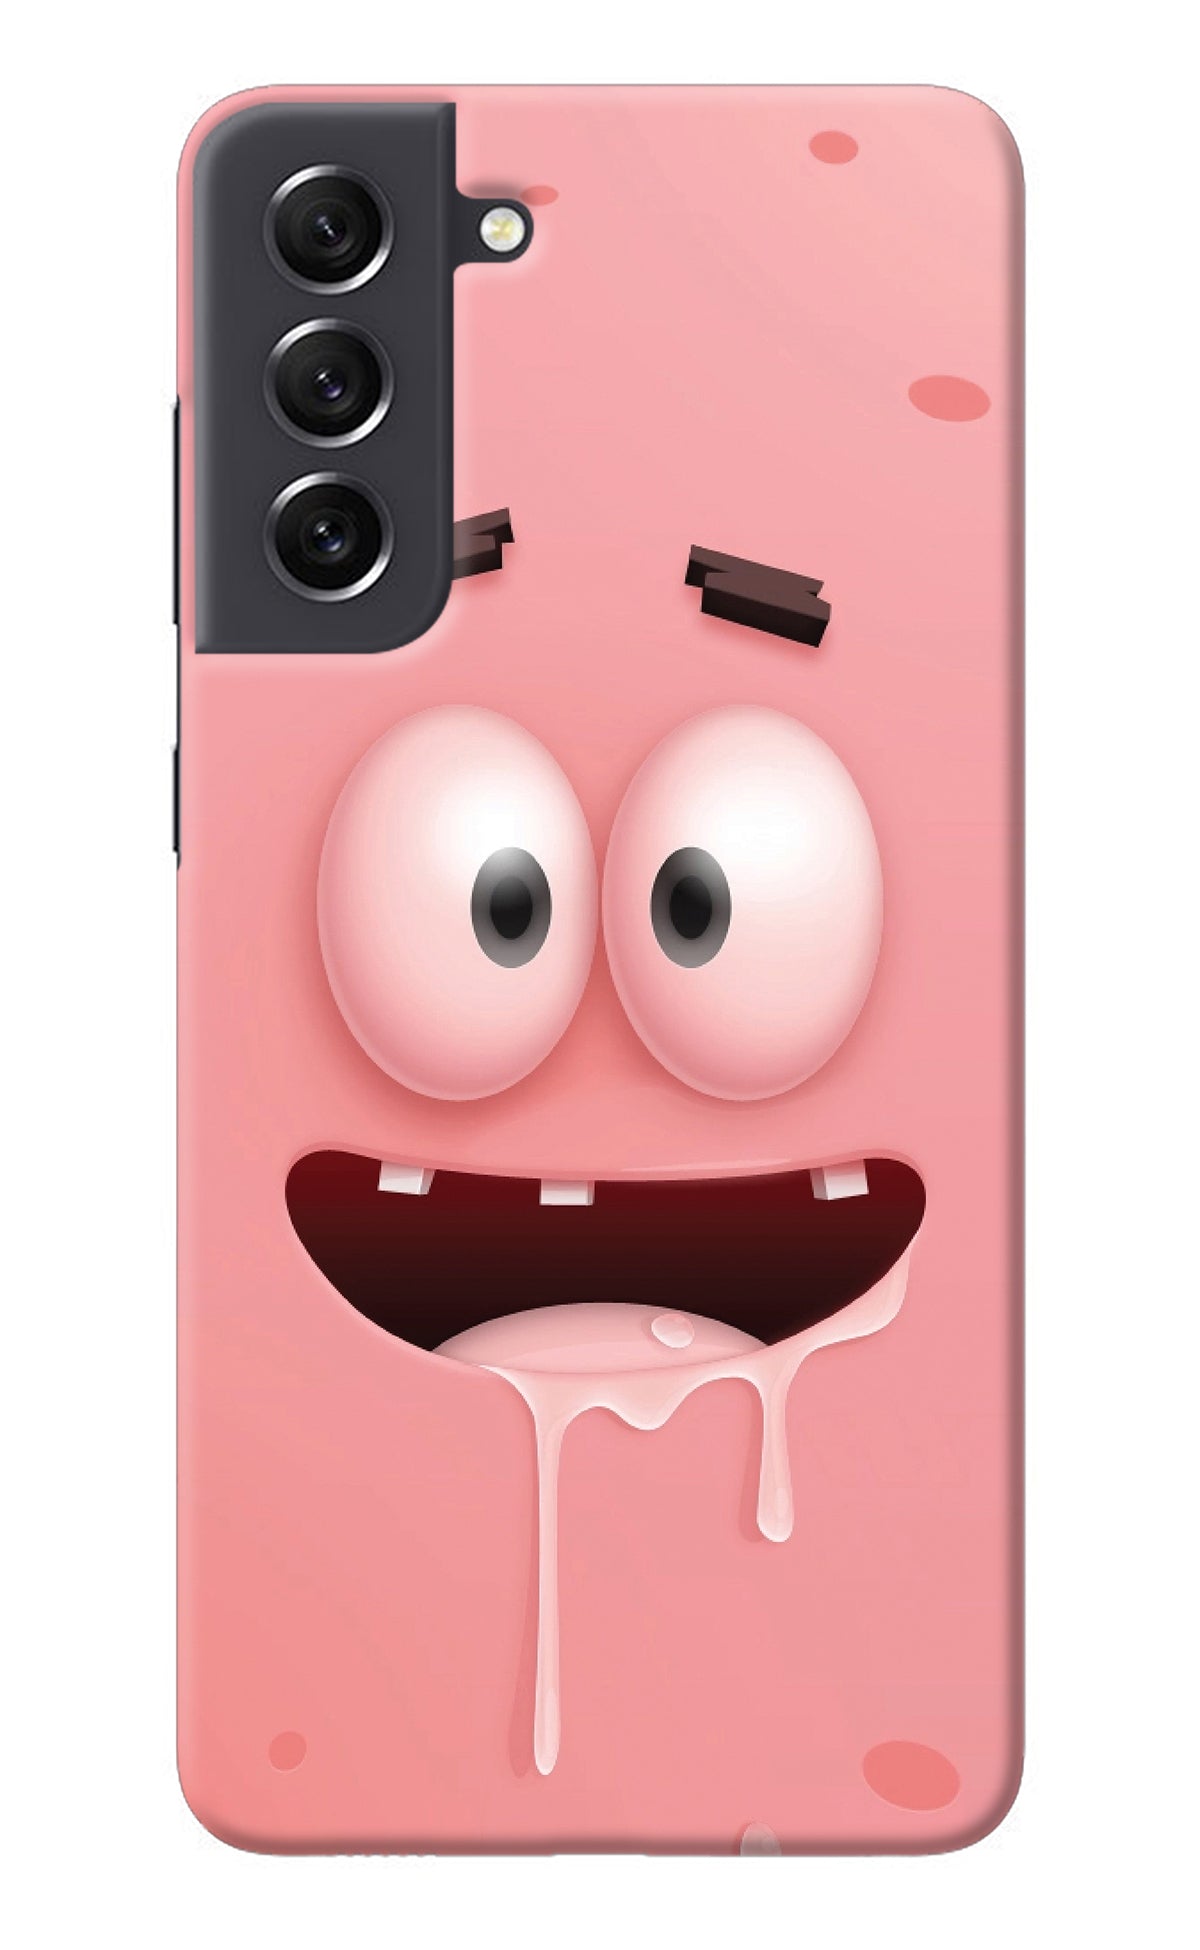 Sponge 2 Samsung S21 FE 5G Back Cover